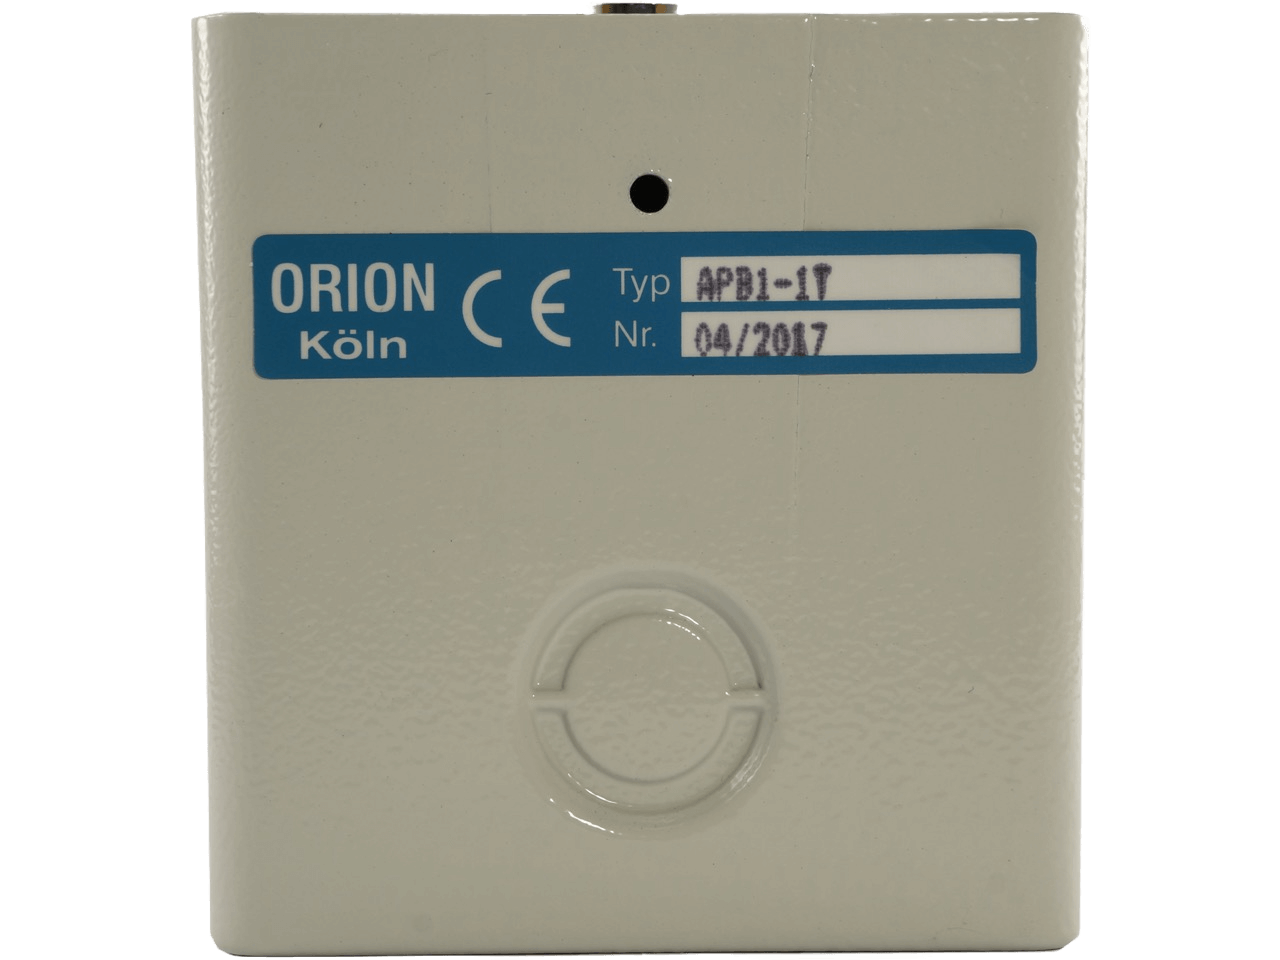 Orion APB 1-1T Schlüsseltaster Aufputz 1-seitig